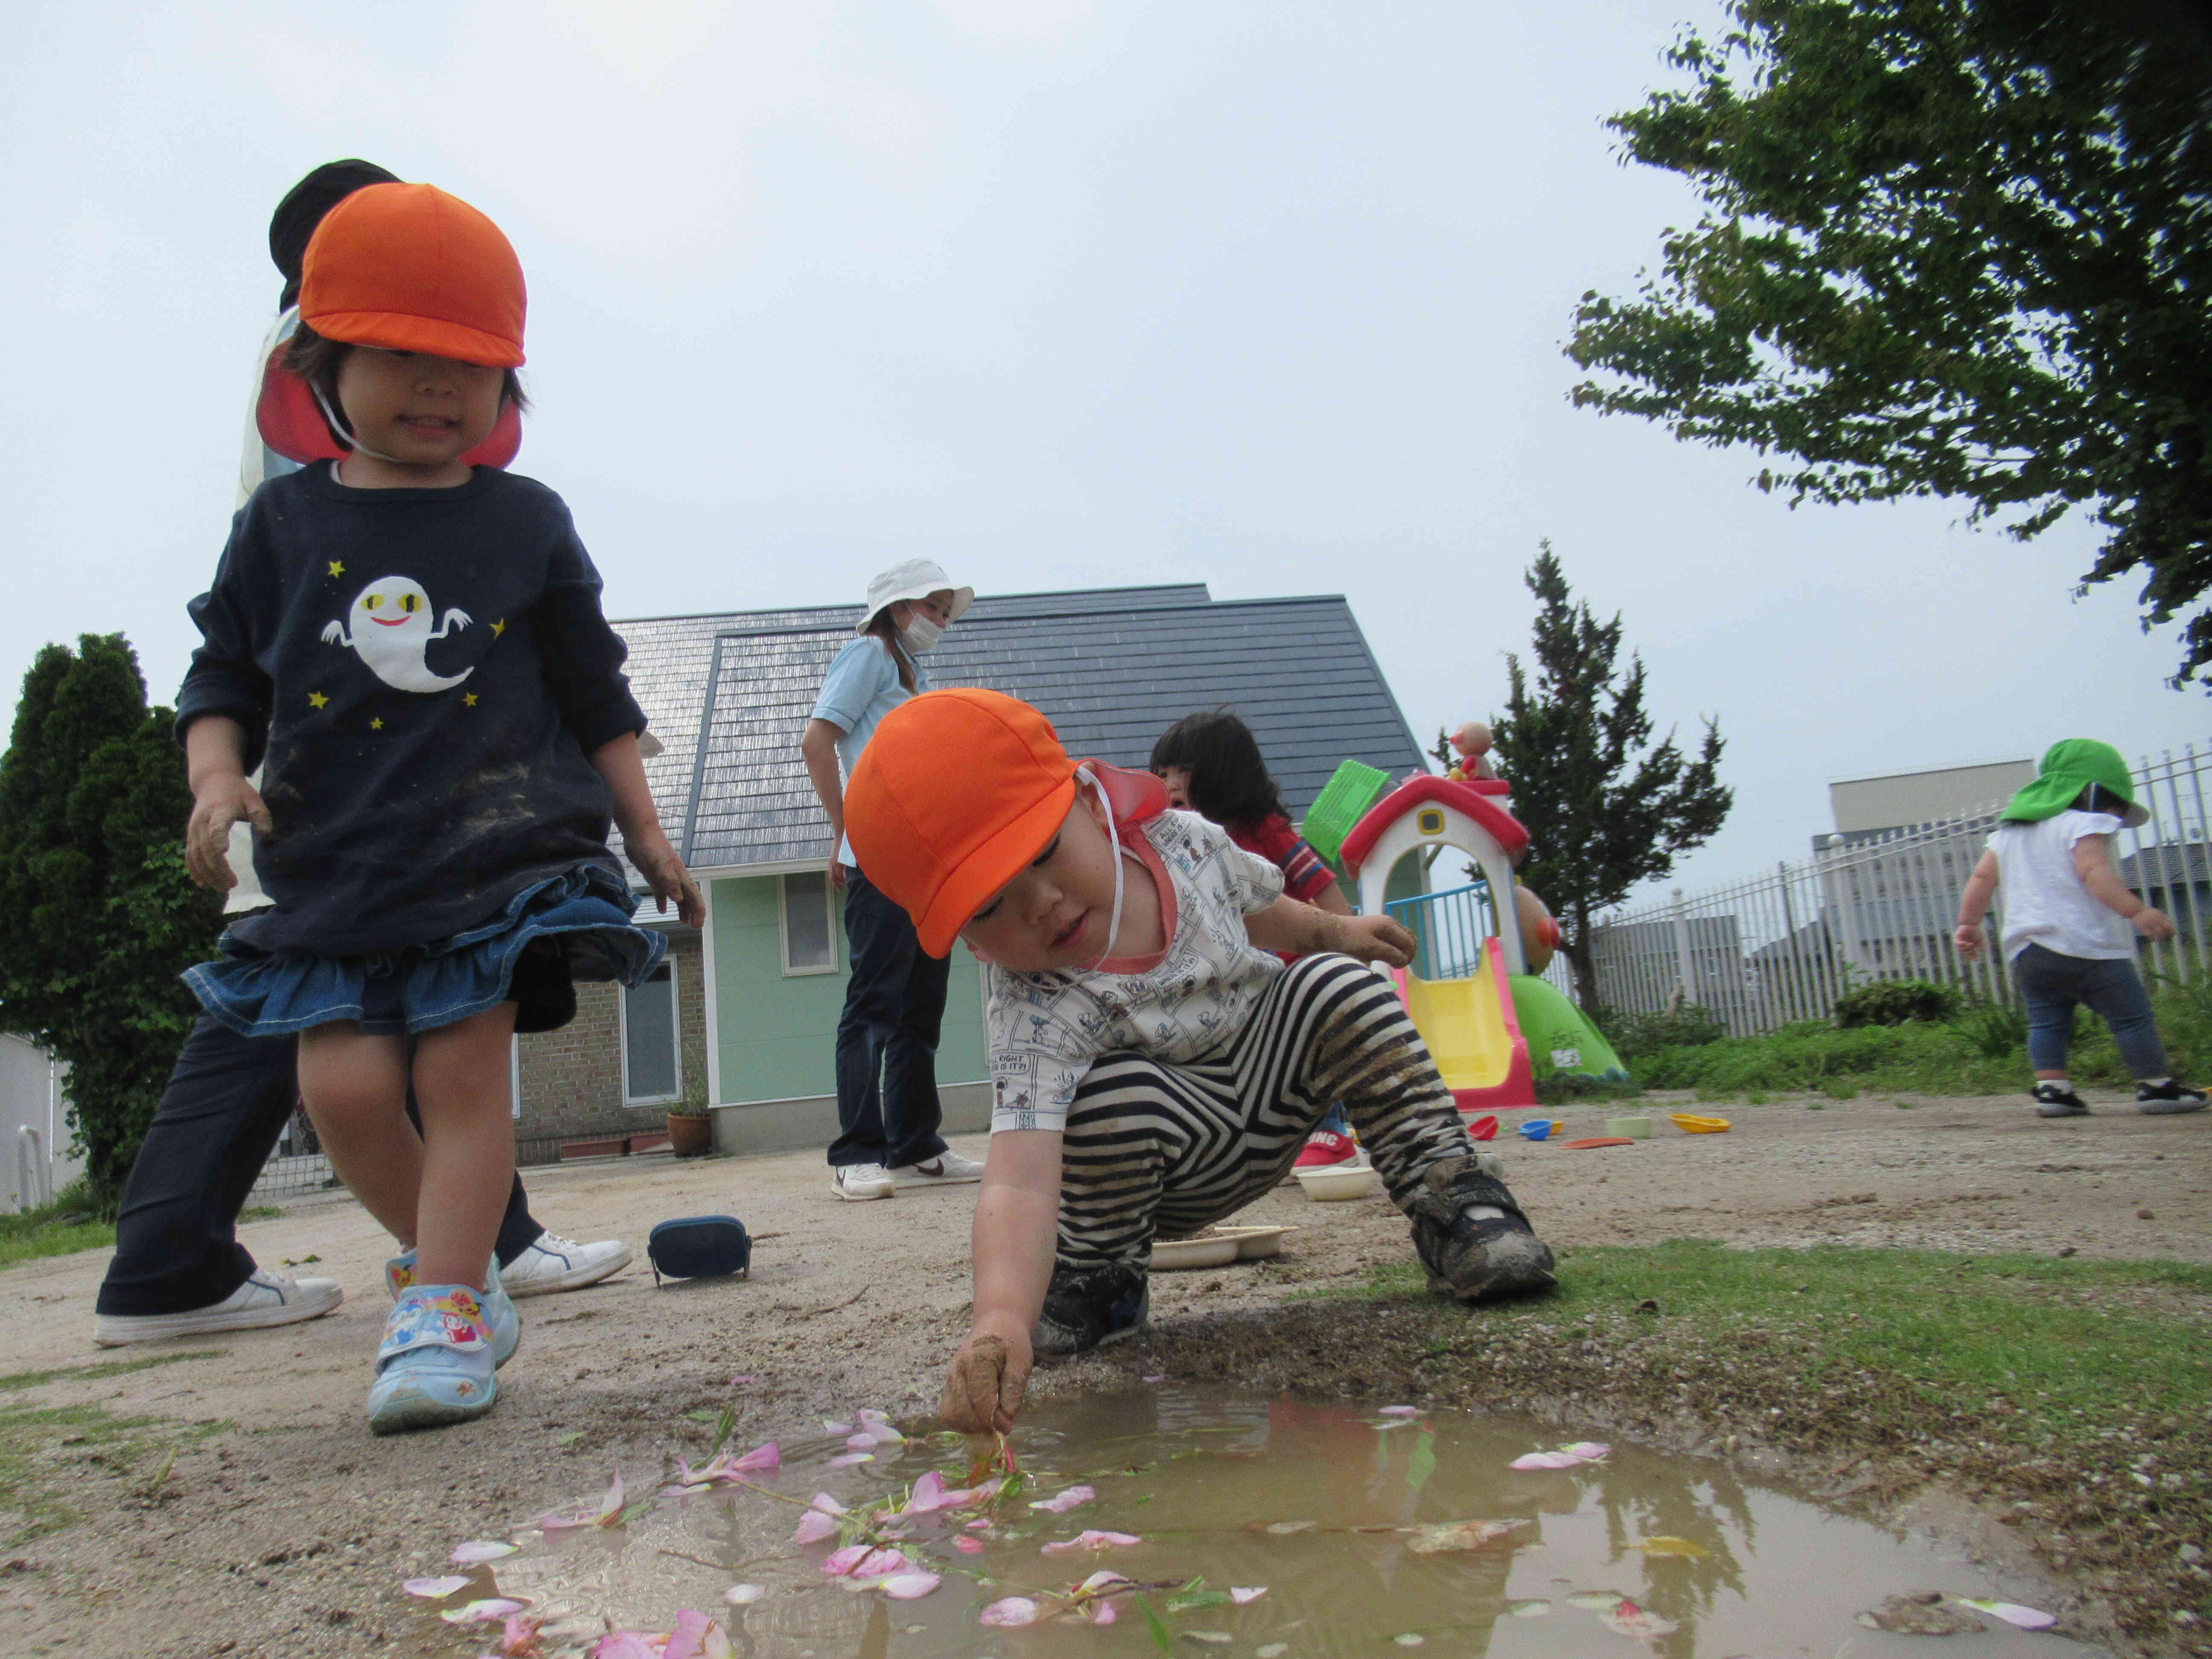 雨上がりのお庭には水たまりがたくさん。子どもたちにとっては楽しい遊びに発展します。